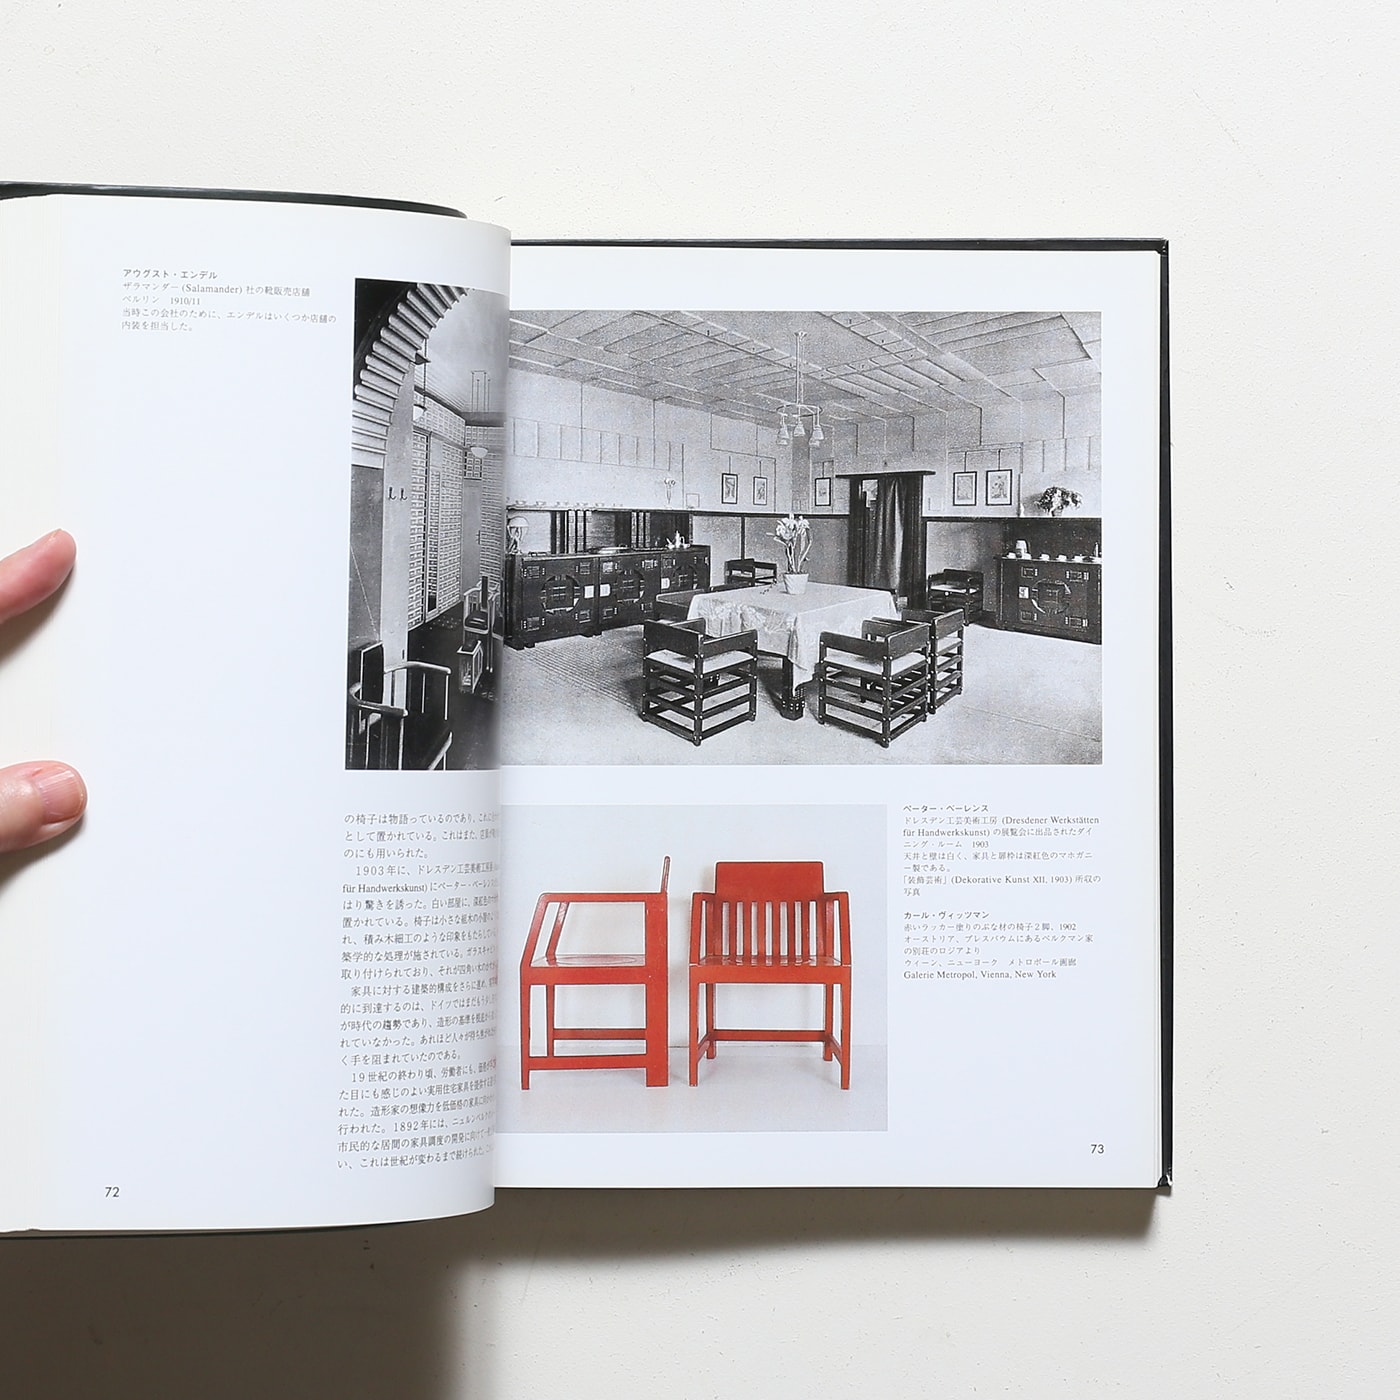 Furniture Design: Twentieth-Century 20世紀の家具デザイン